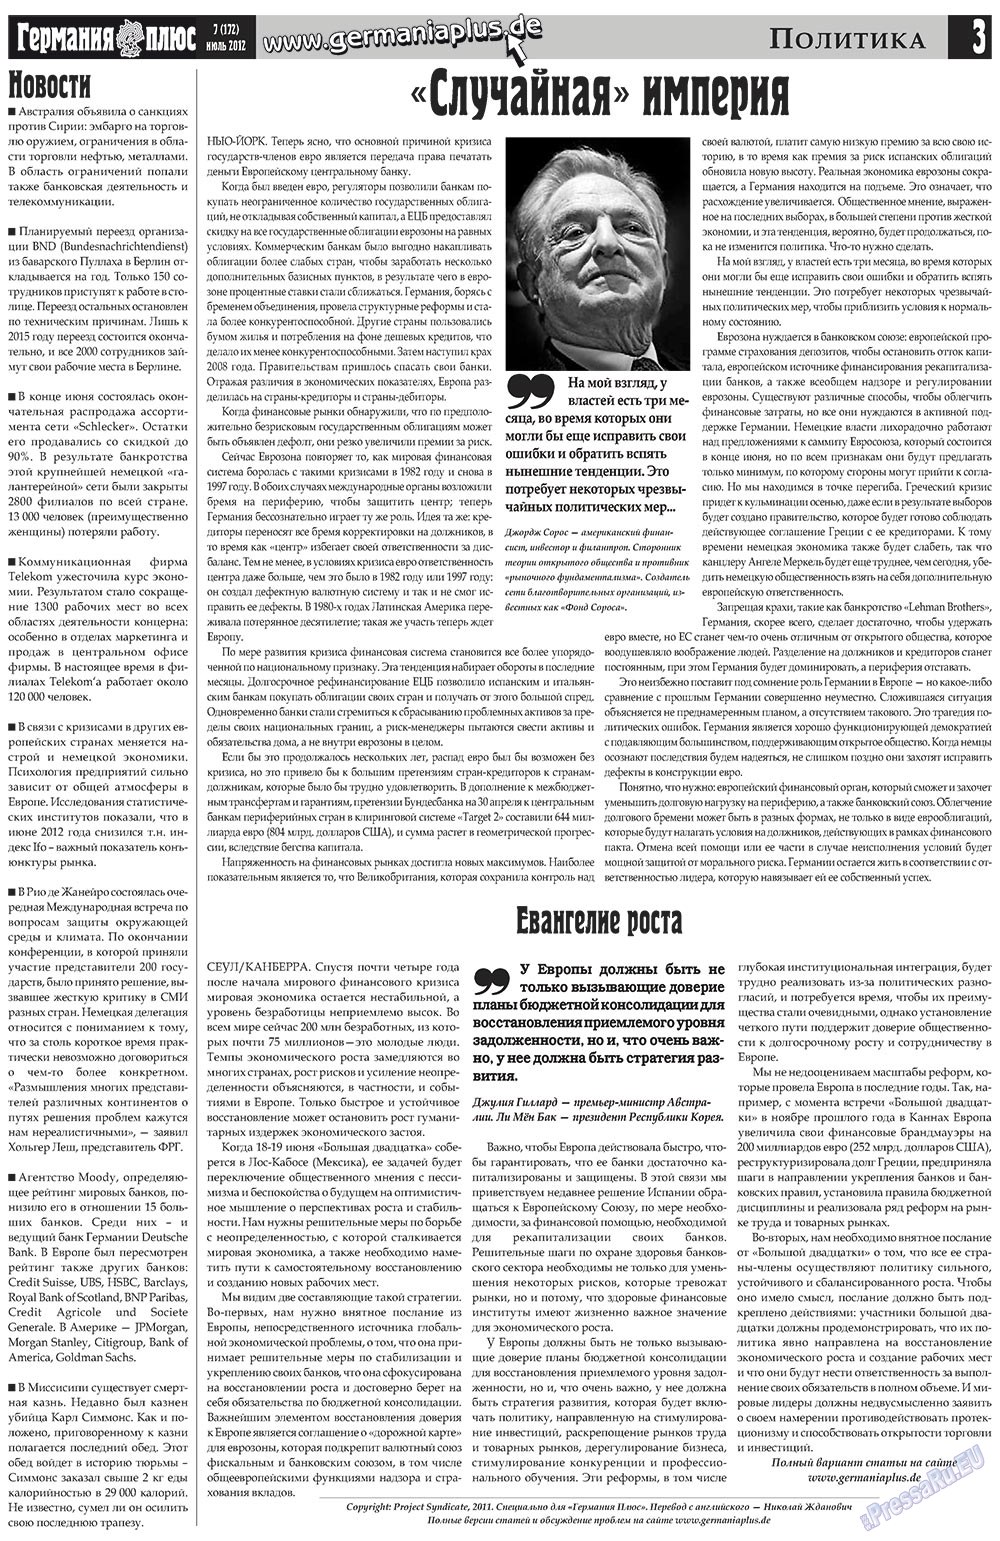 Германия плюс (газета). 2012 год, номер 7, стр. 3